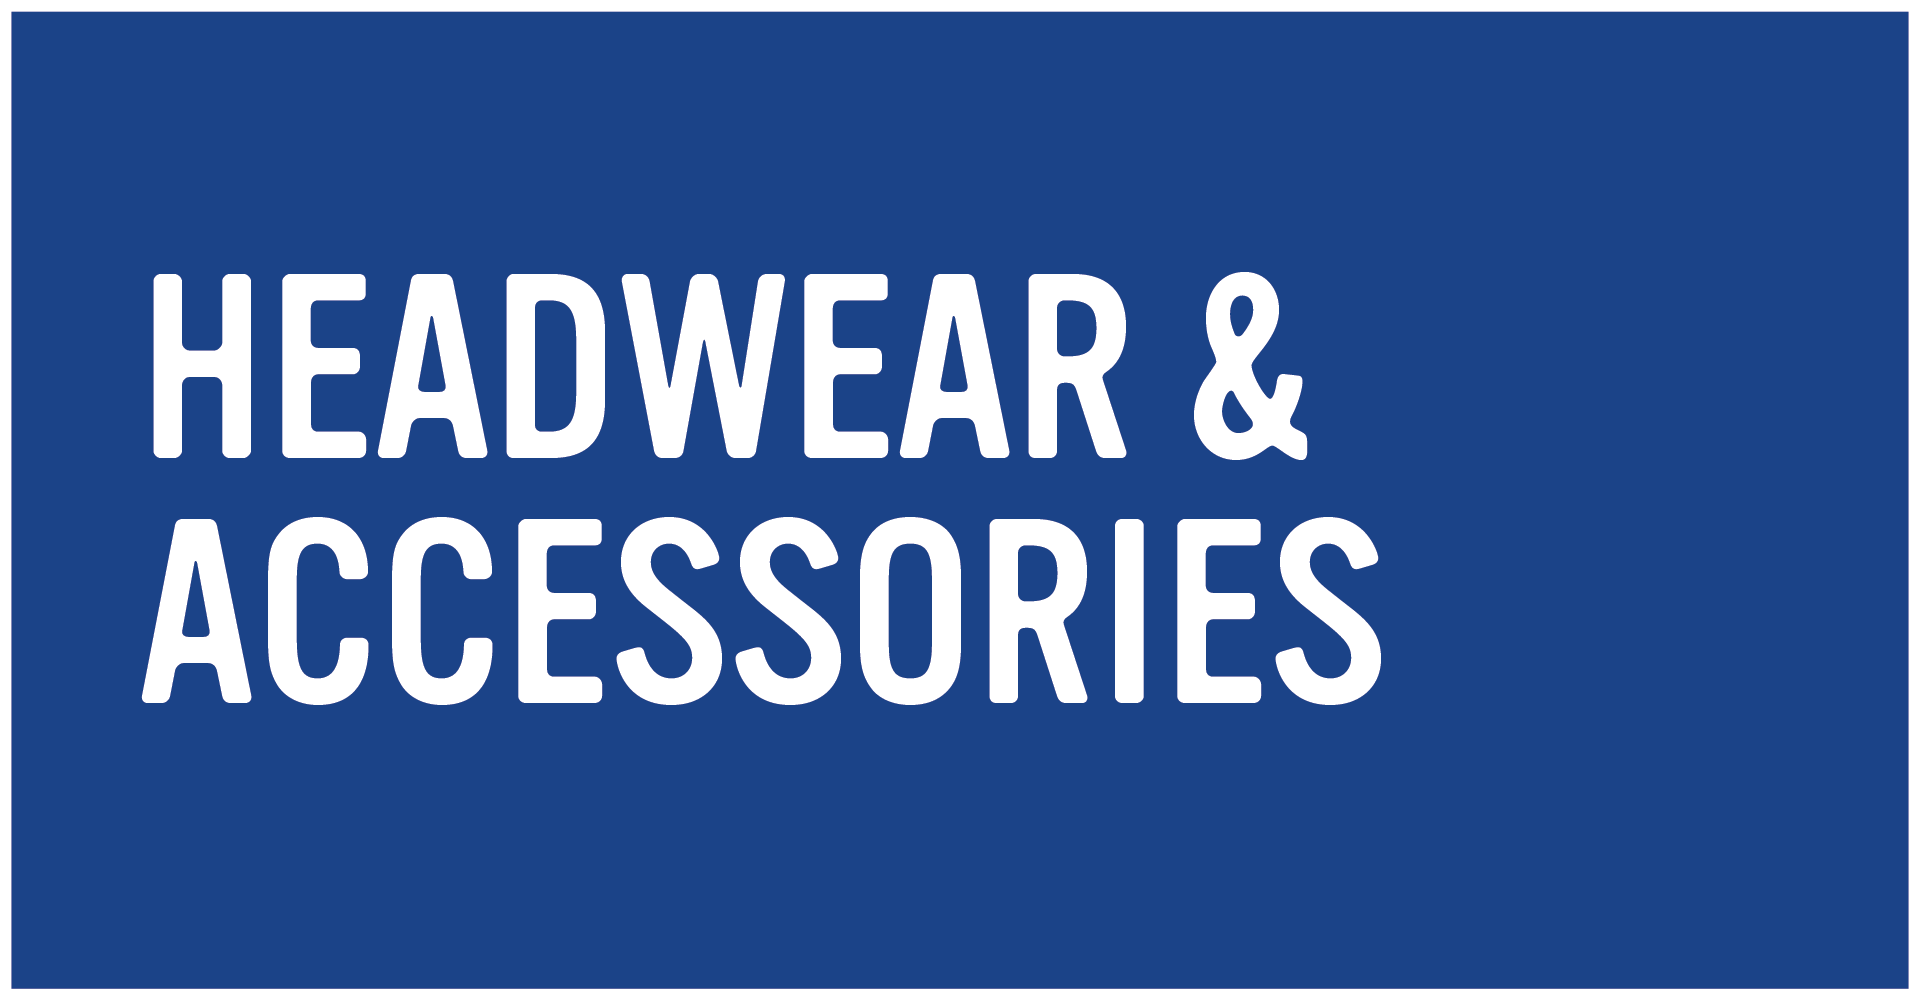 Headwear & Accessories